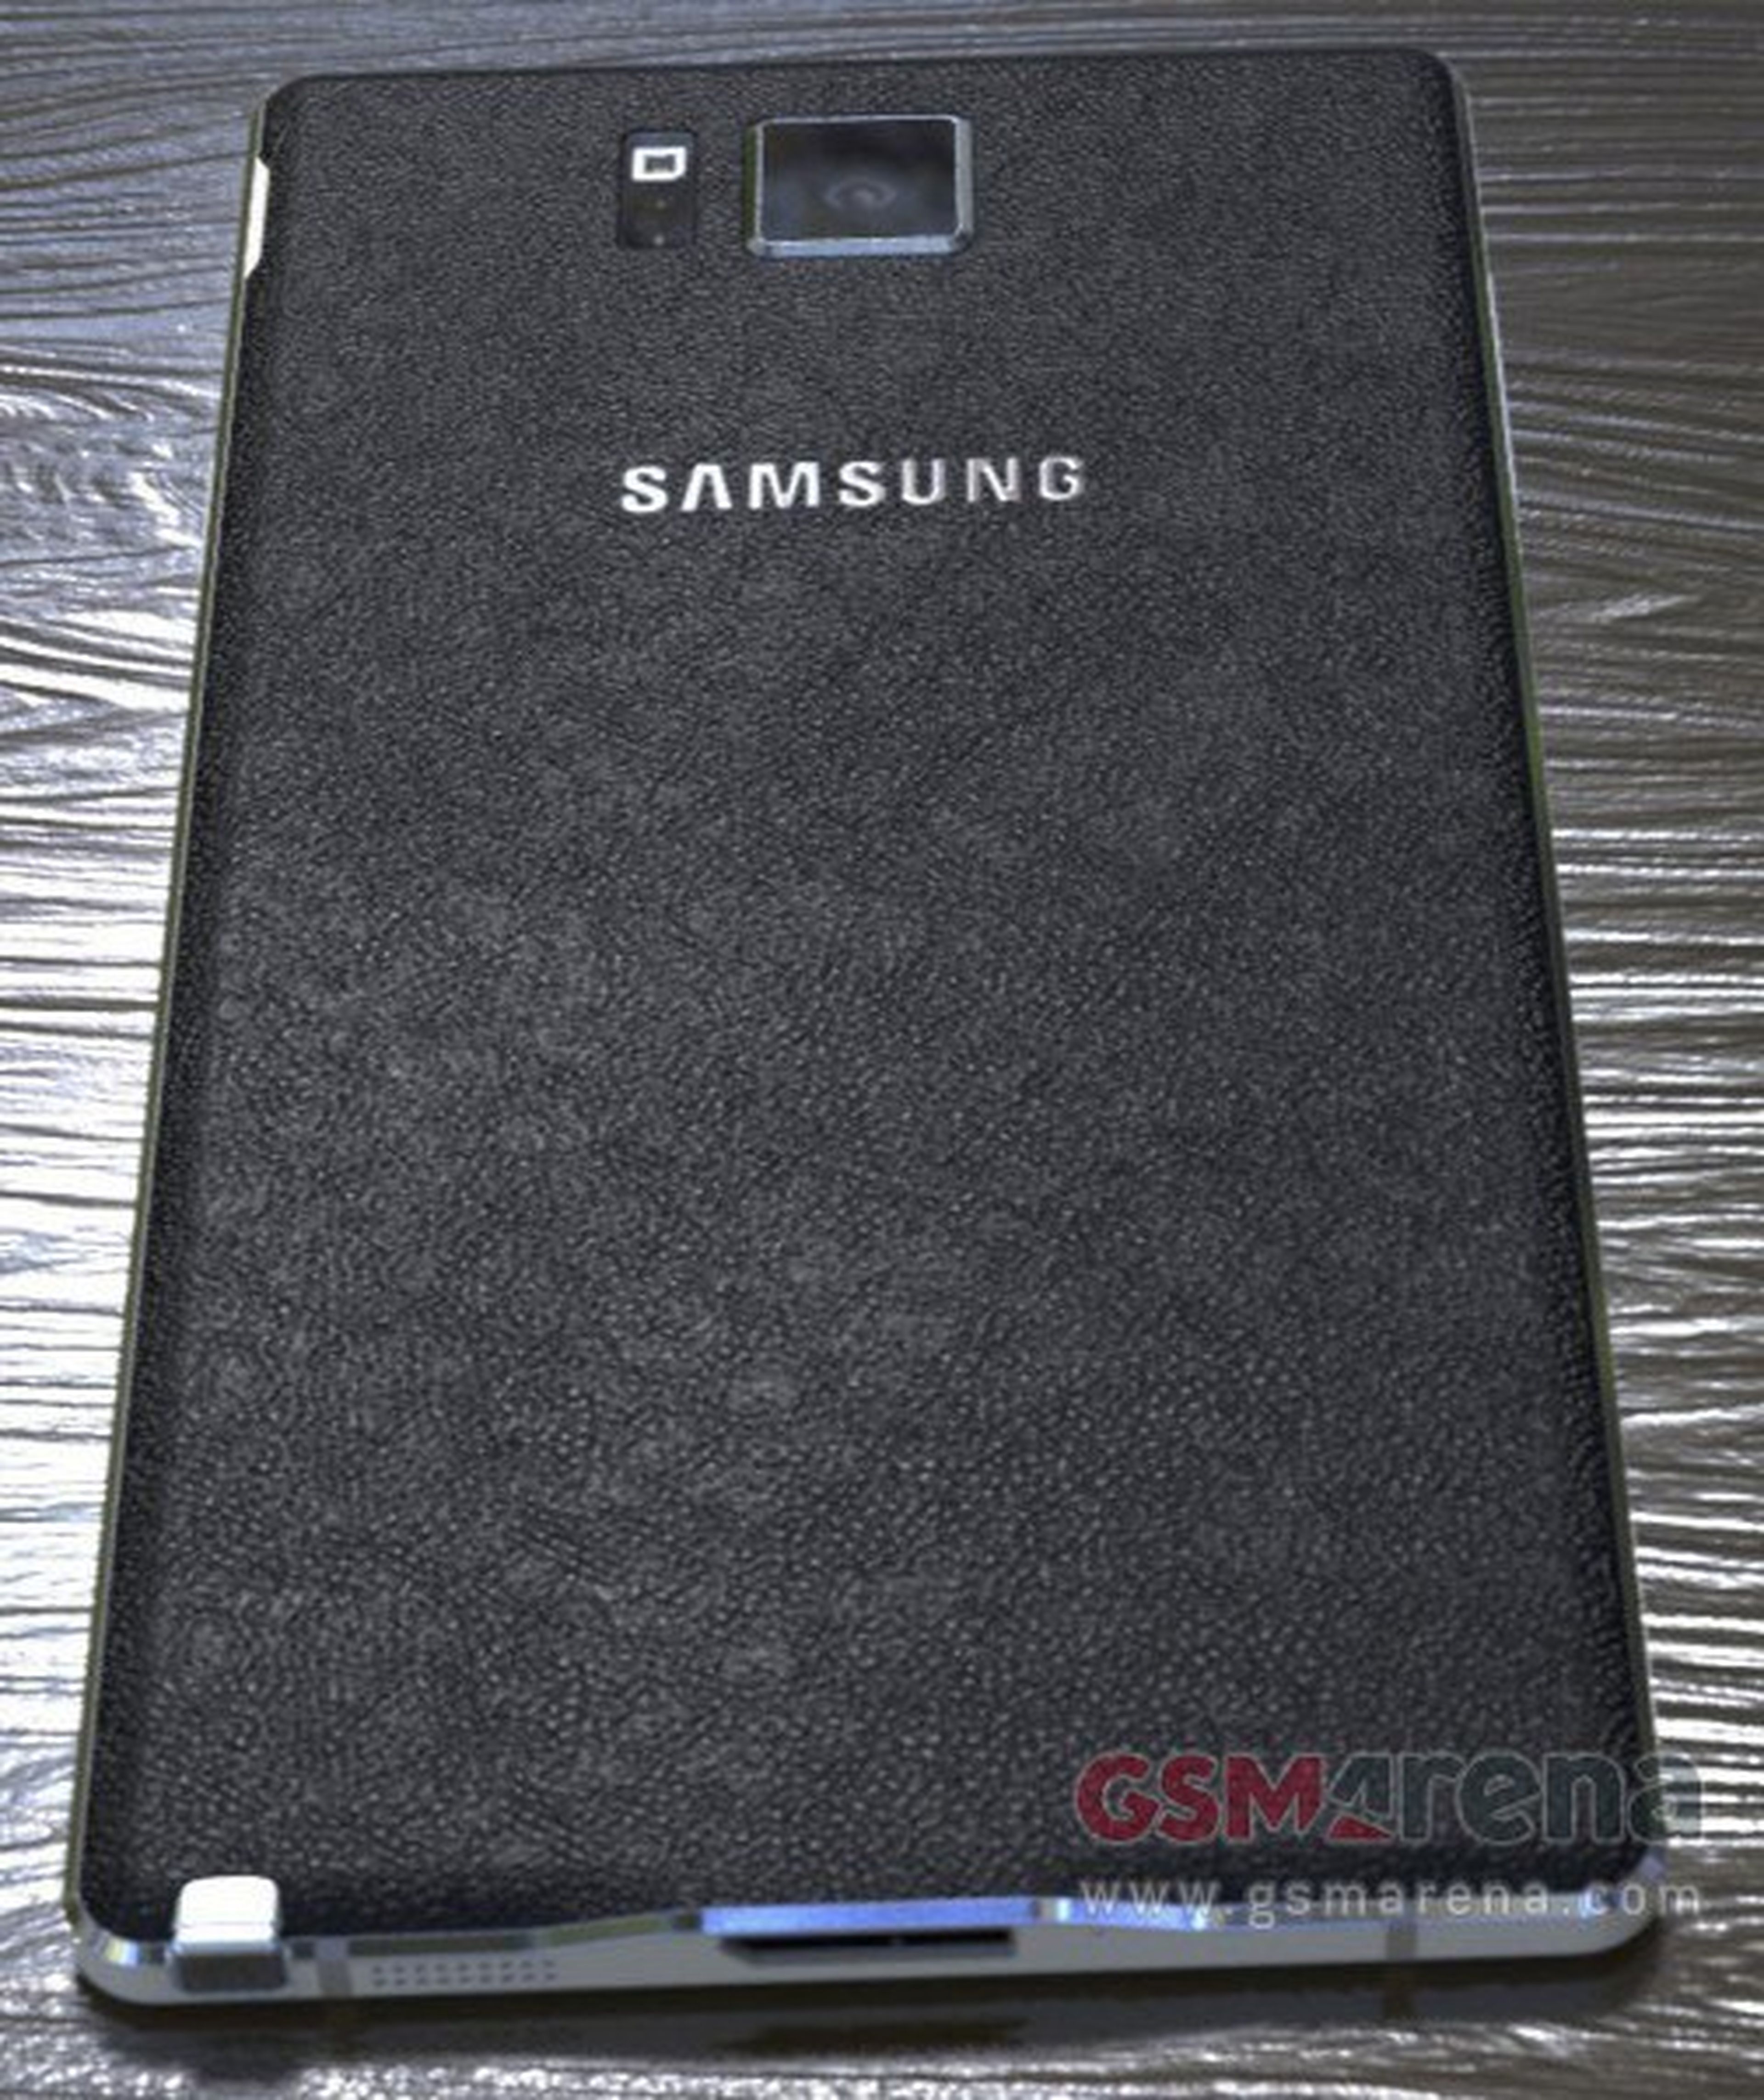 Samsung galaxy note filtrado